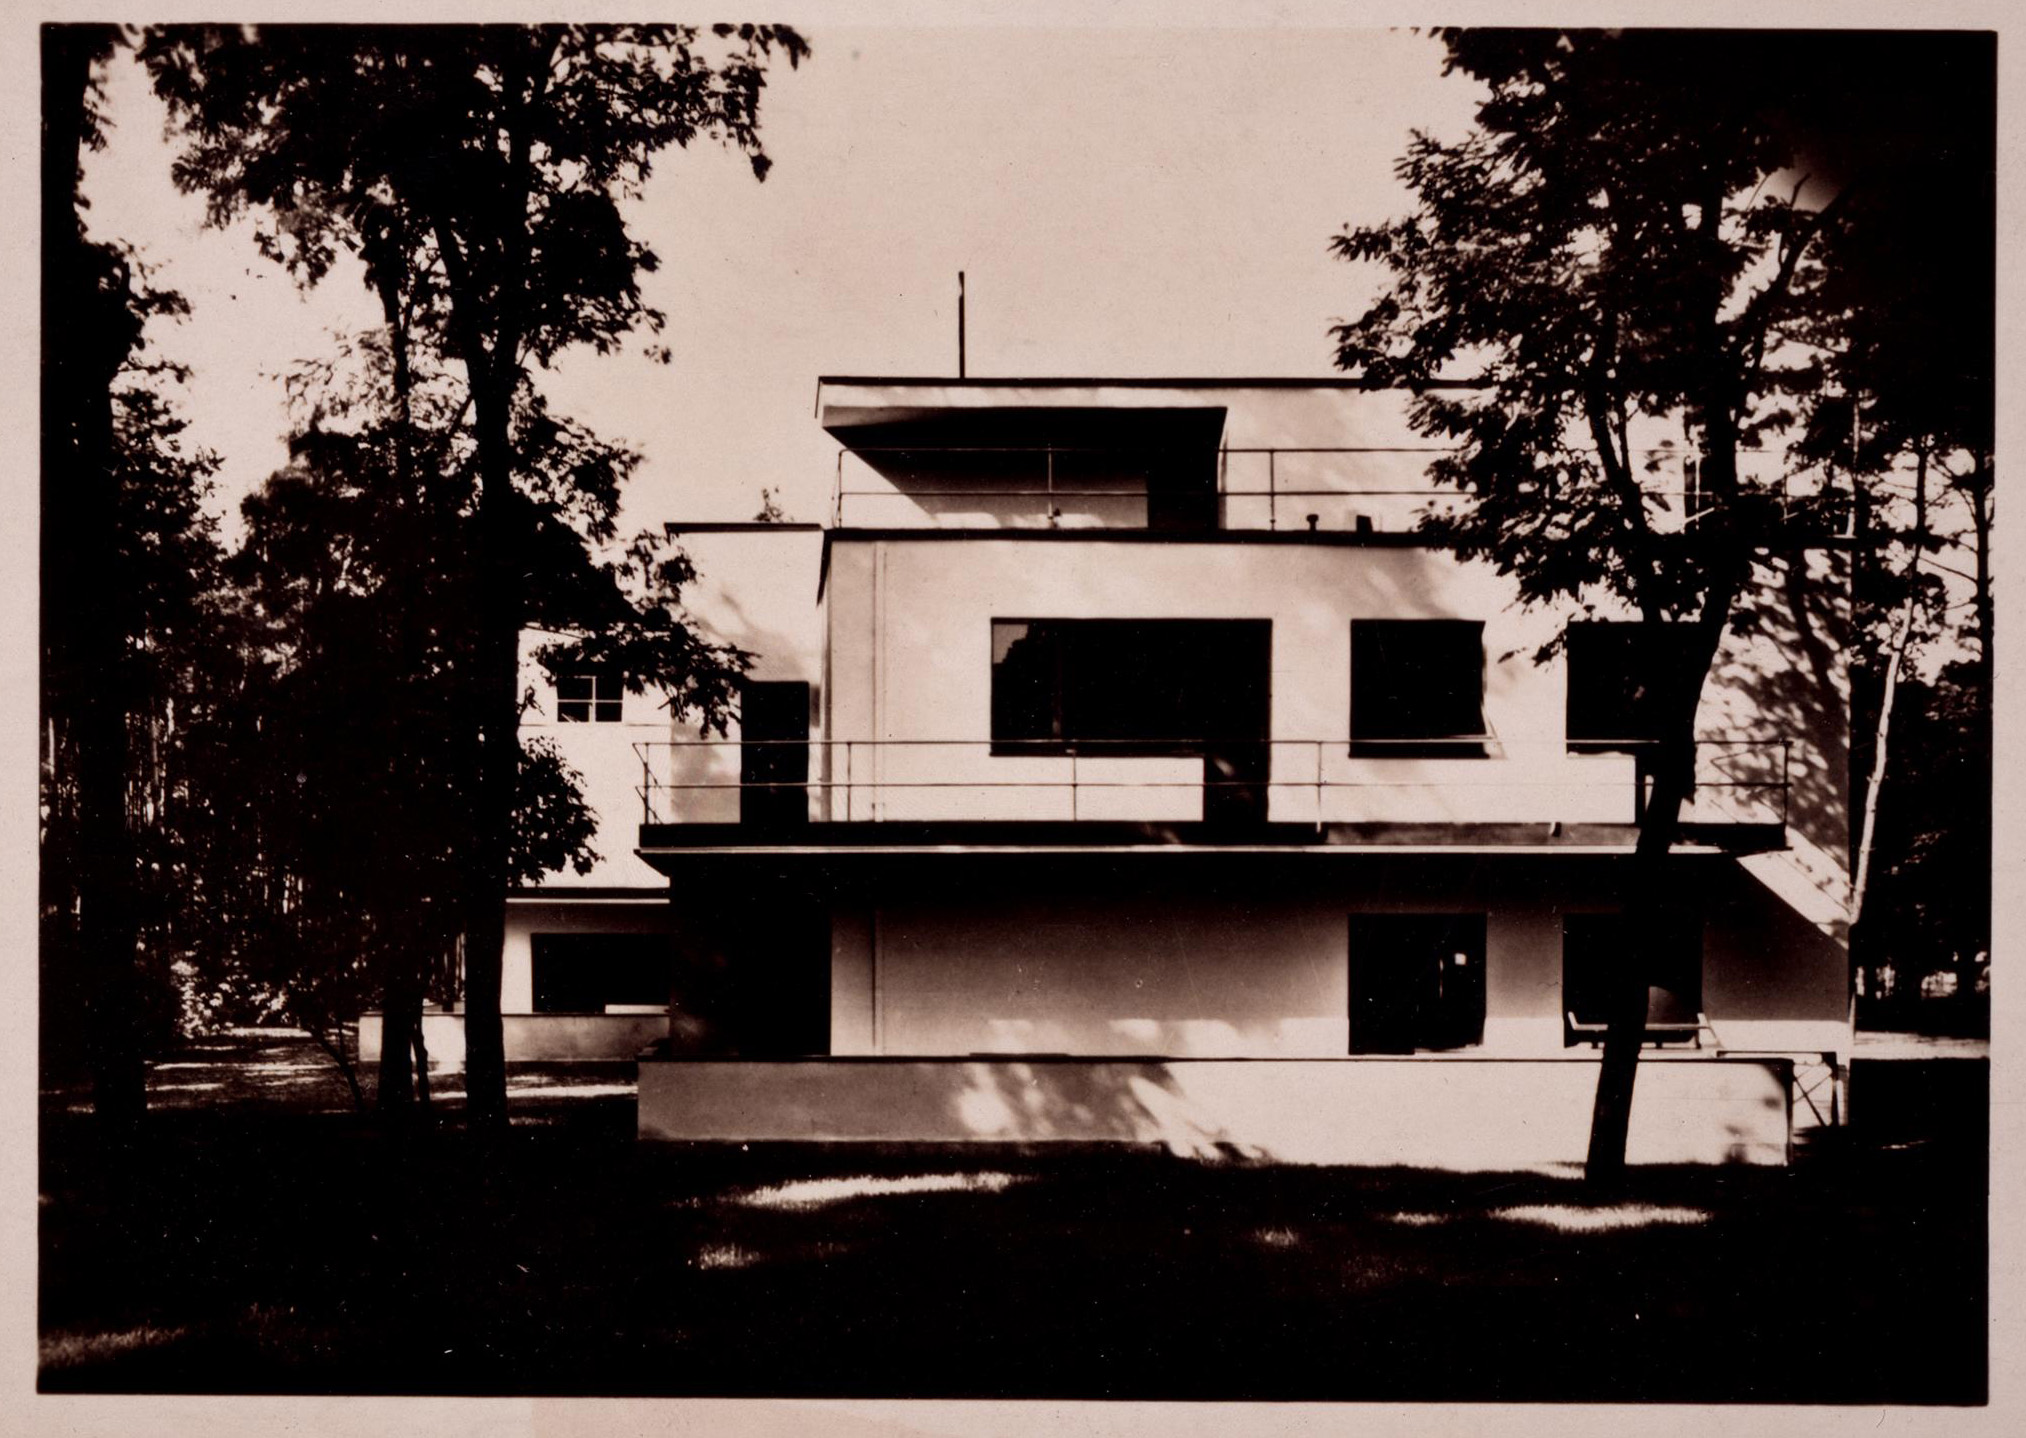 Postkarte: Moholy, Lucia "Doppelwohnhaus der Bauhaus-Meistersiedlung Dessau", 1926